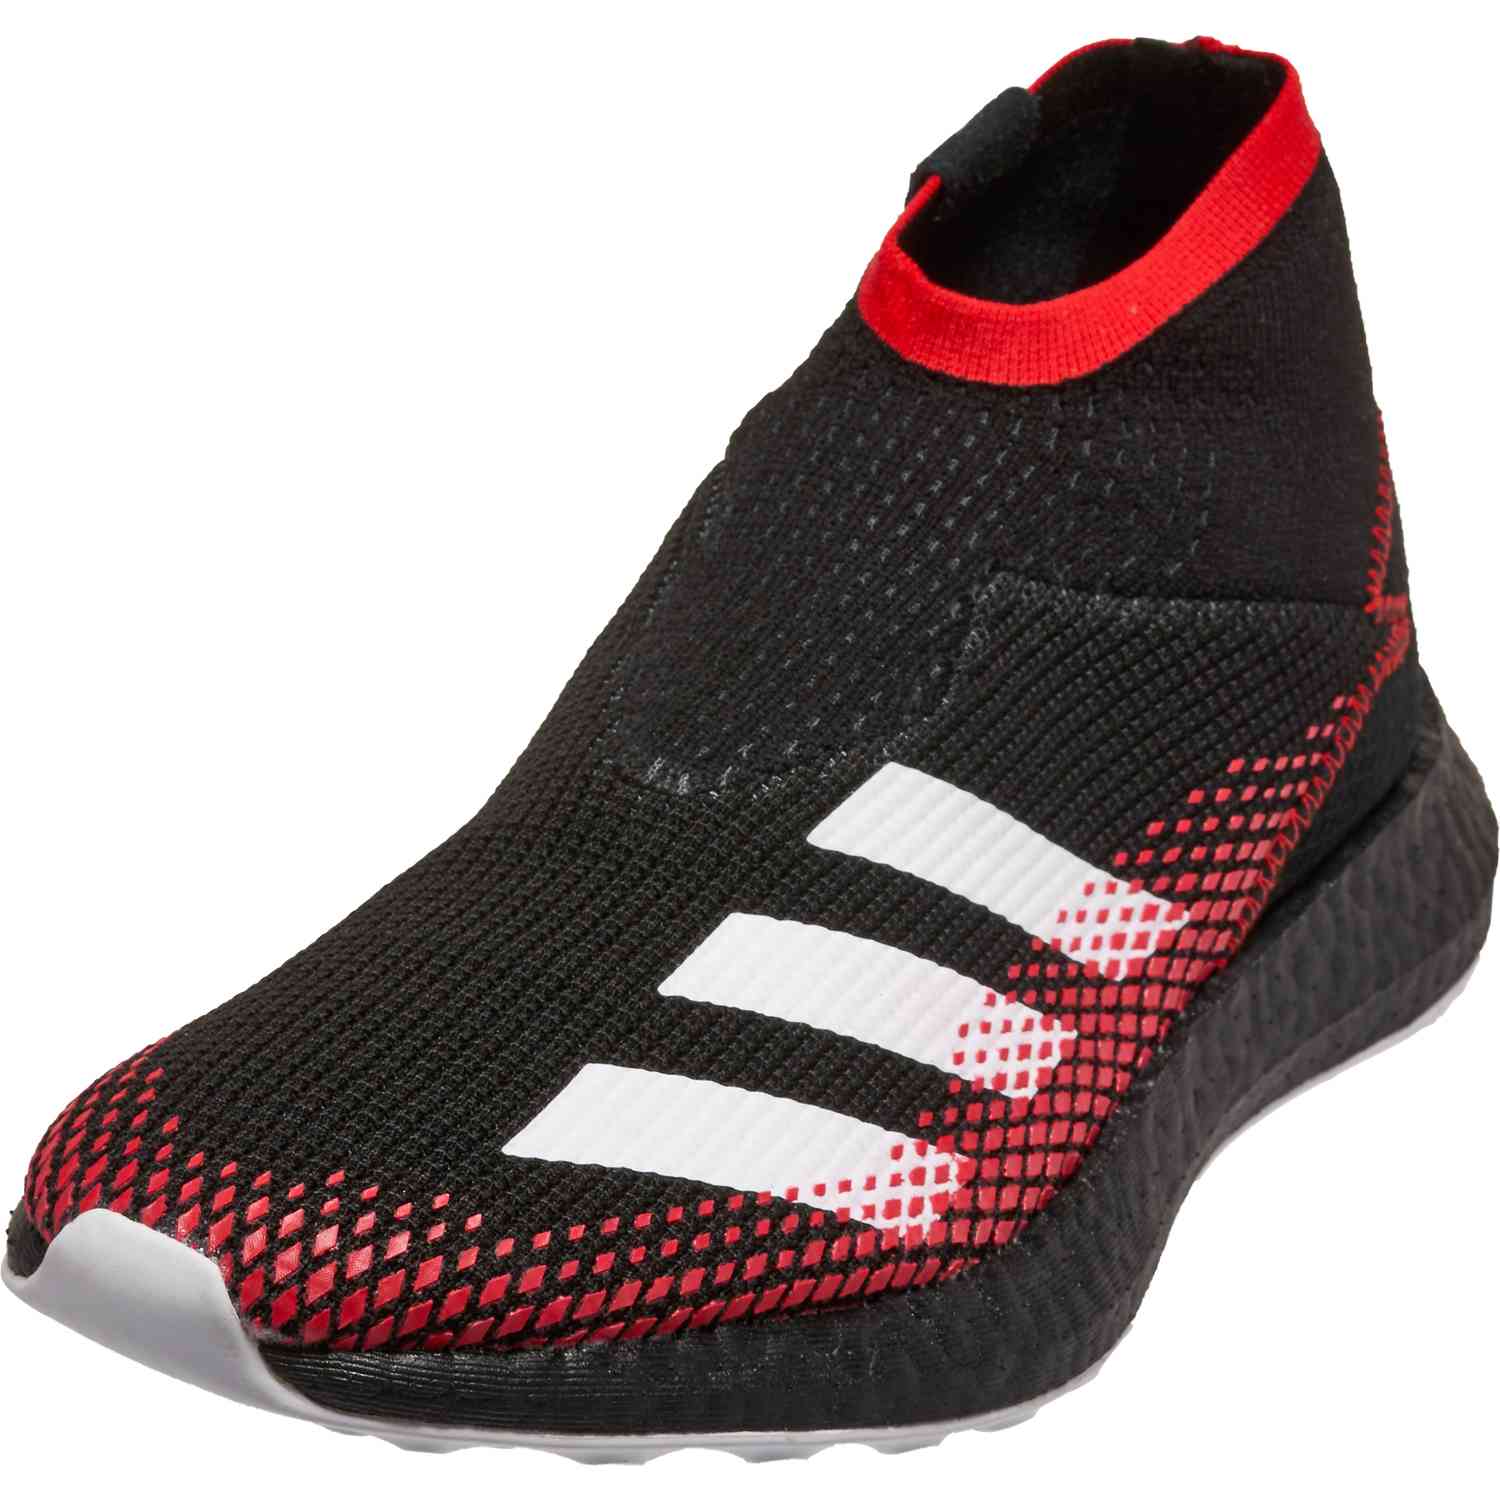 Adidas Predator David Beckham for sale eBay